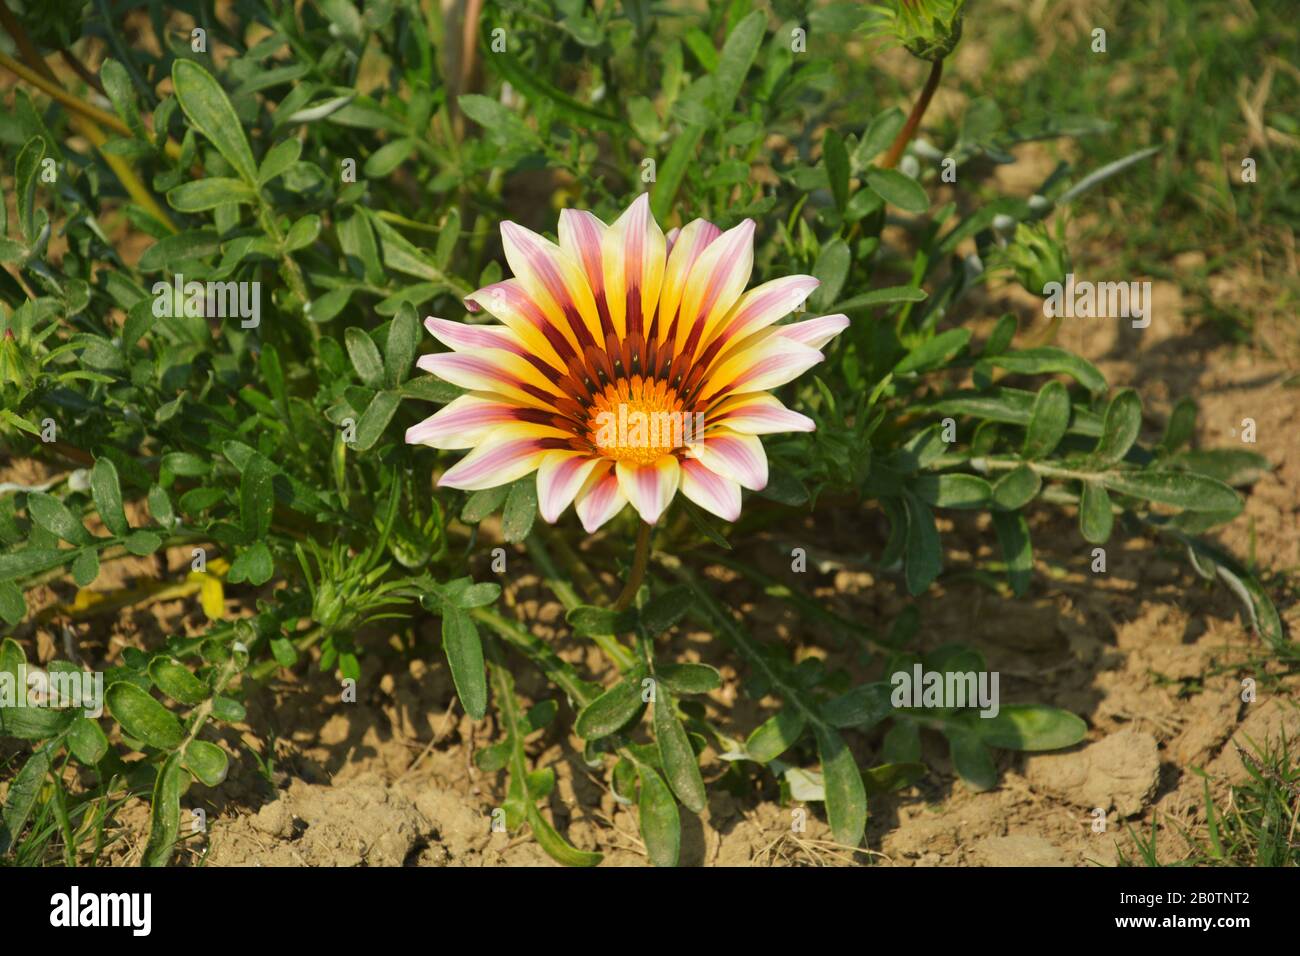 Nahaufnahme einer schönen Gartenlaube große weiße Flamme ( Schatzblume), Gazania strenge Blumen, südafrikanische Gänseblümchen, die im Garten in Indien wachsen Stockfoto